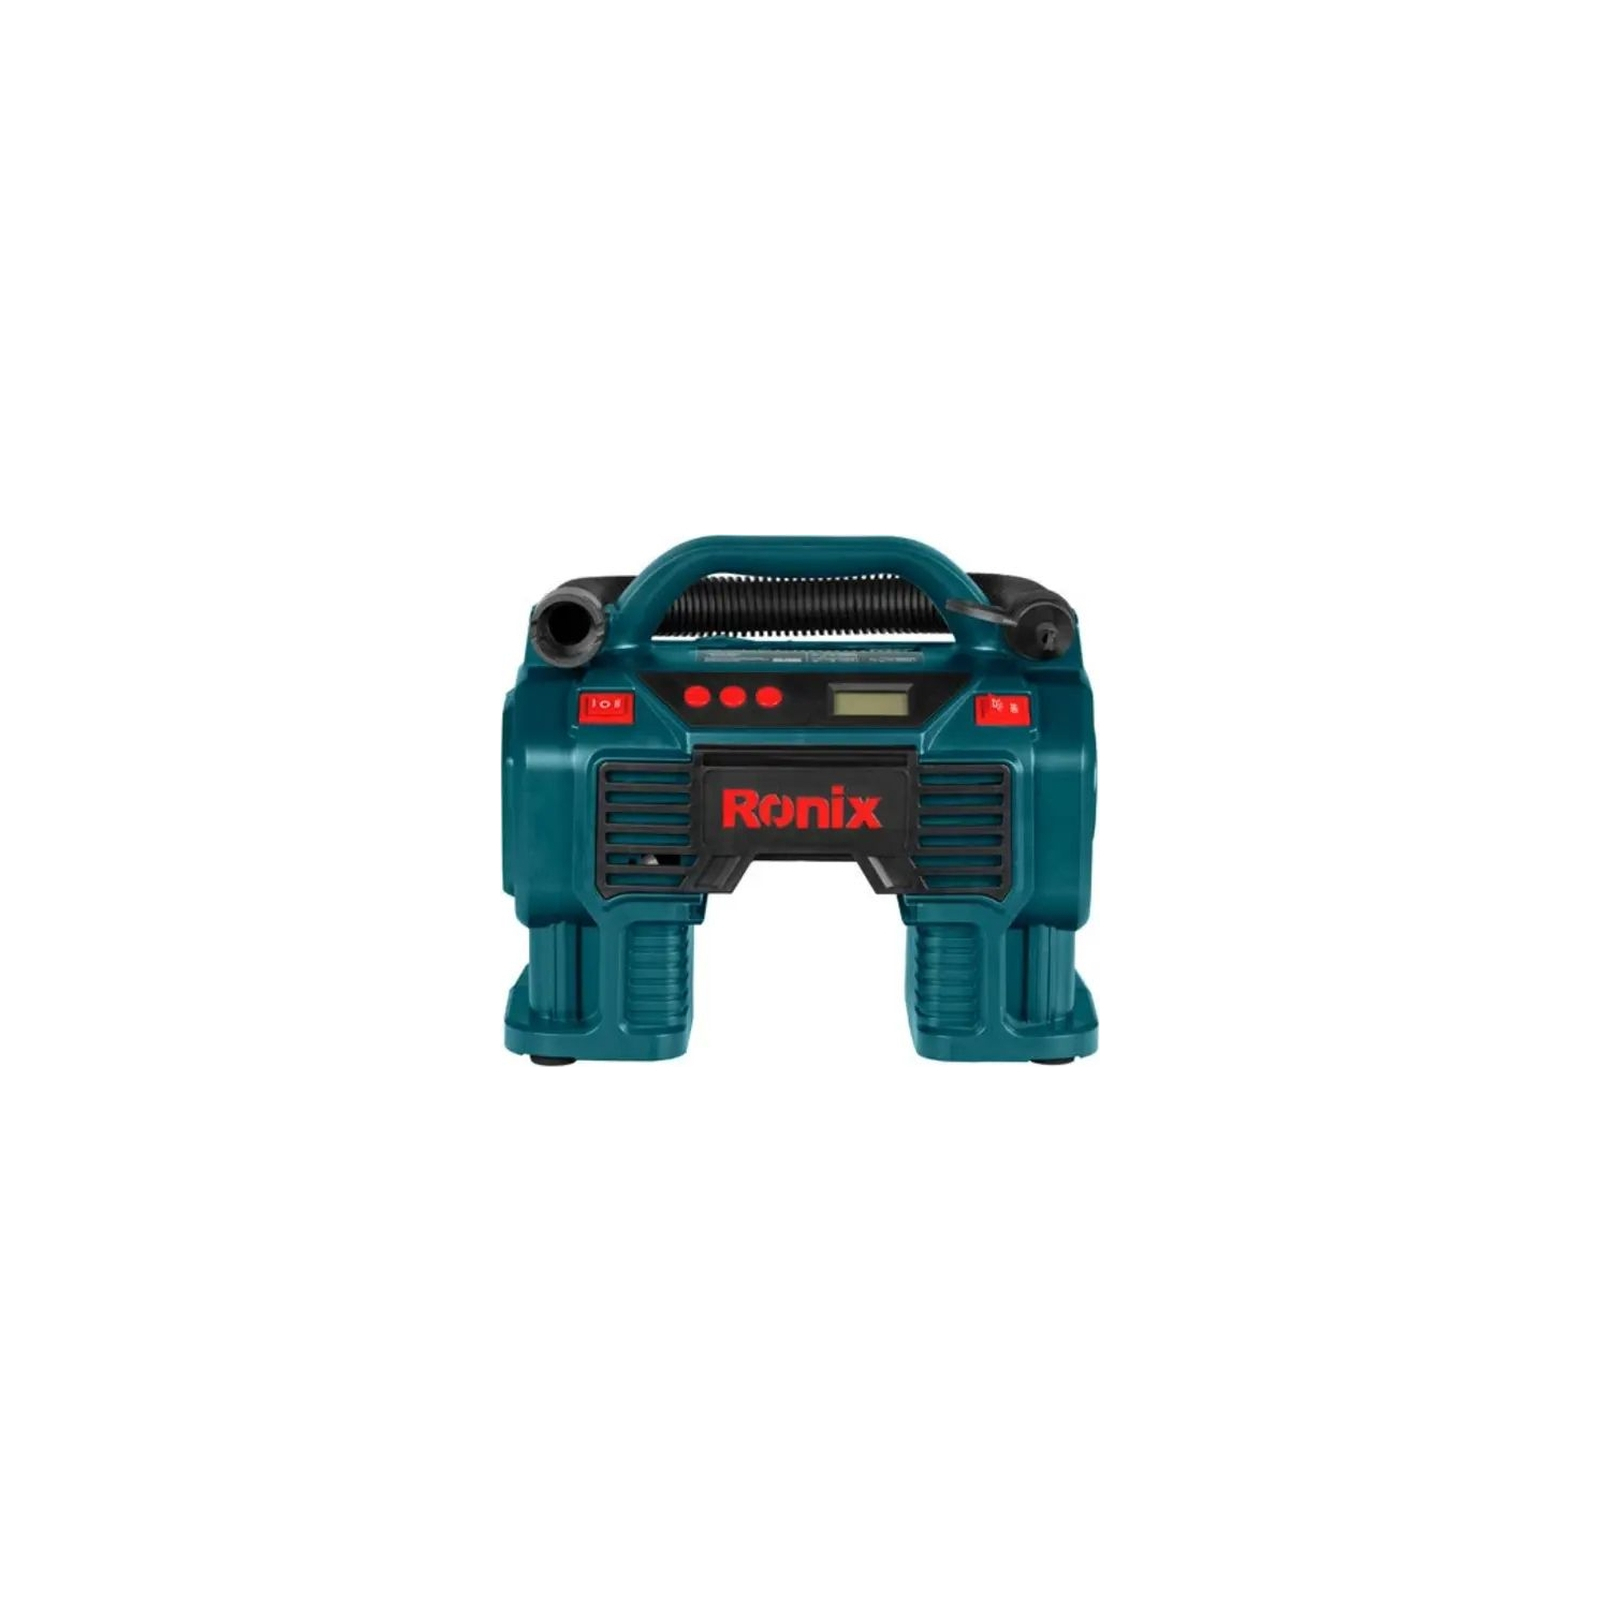 Автомобильный компрессор Ronix цифровой 12В, 160 PSI (RH-4260) изображение 2